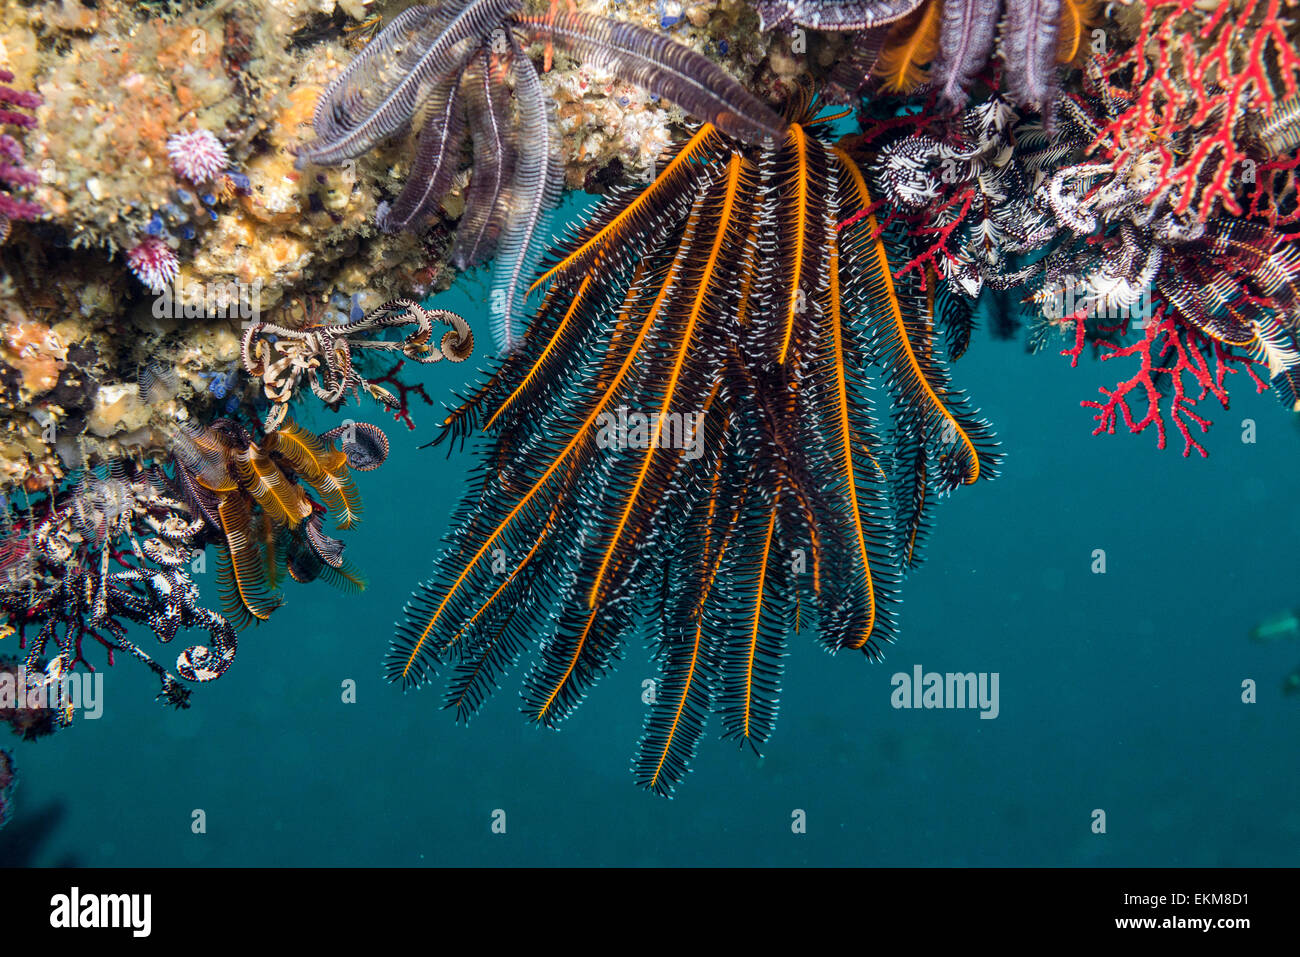 Haarsterne vom Riff Fische herabhängen. Owase, Mie, Japan. Stockfoto